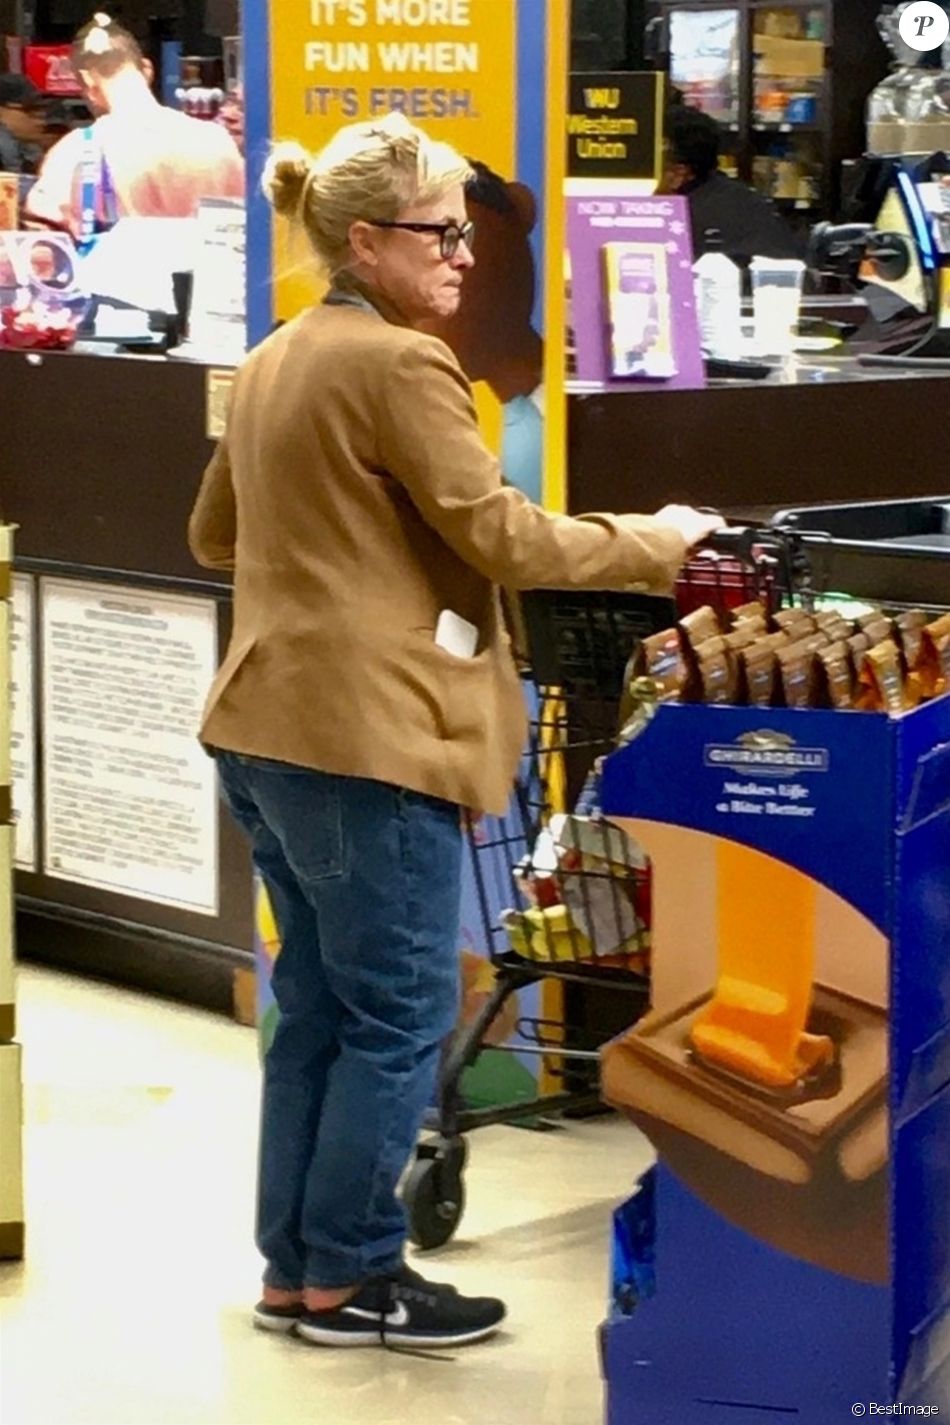 Exclusif - Patricia Arquette fait ses courses dans un supermarché à Los Angeles le 5 janvier 2020.